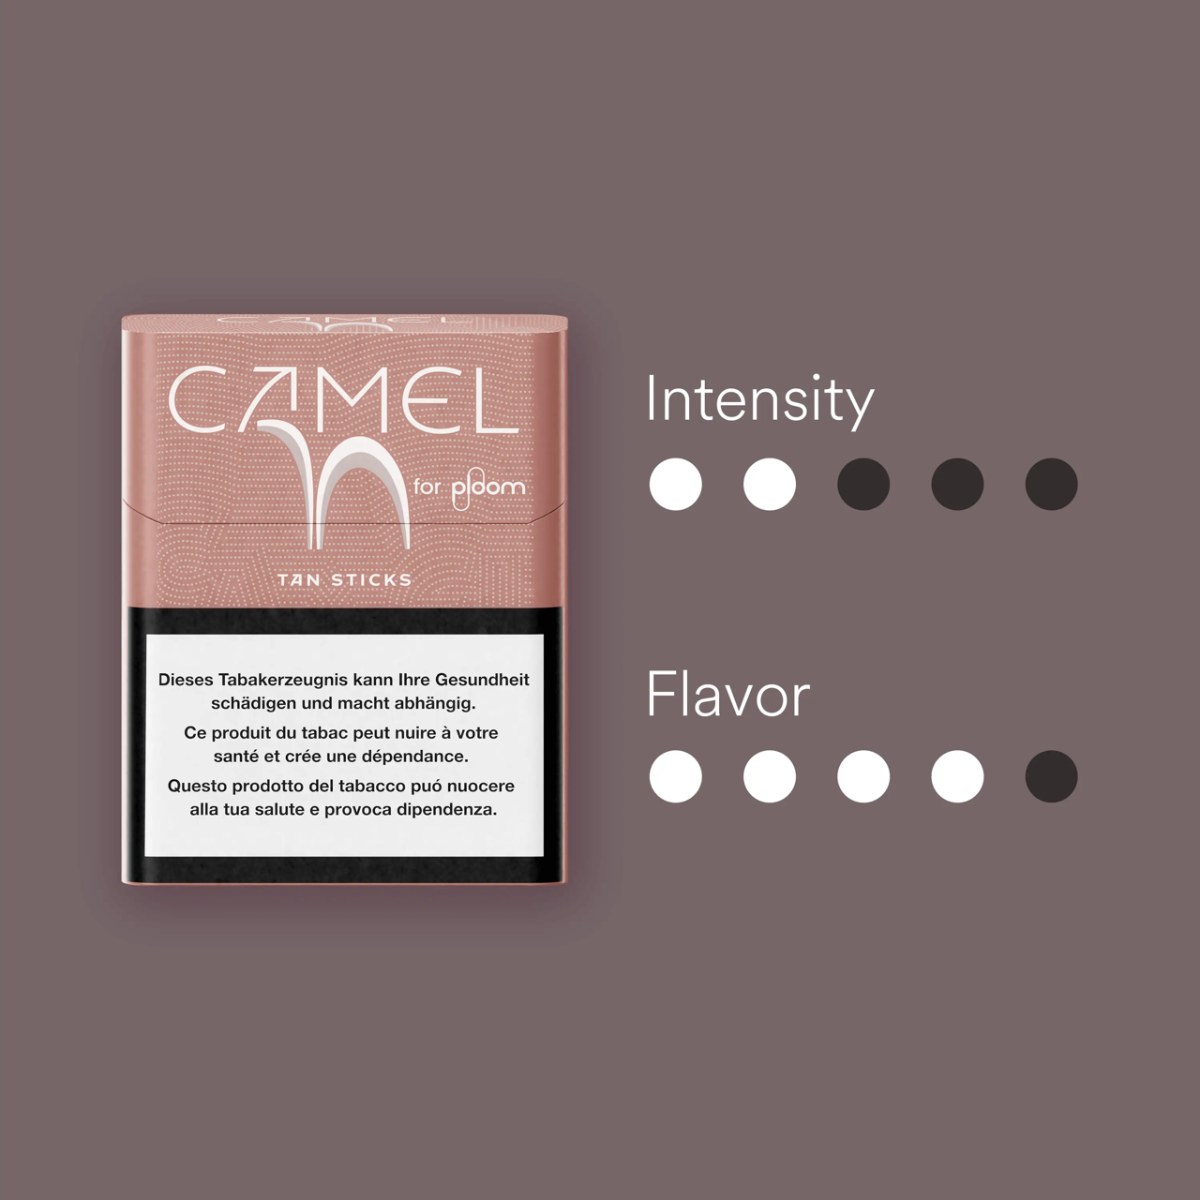 Camel tan sticks intensité
